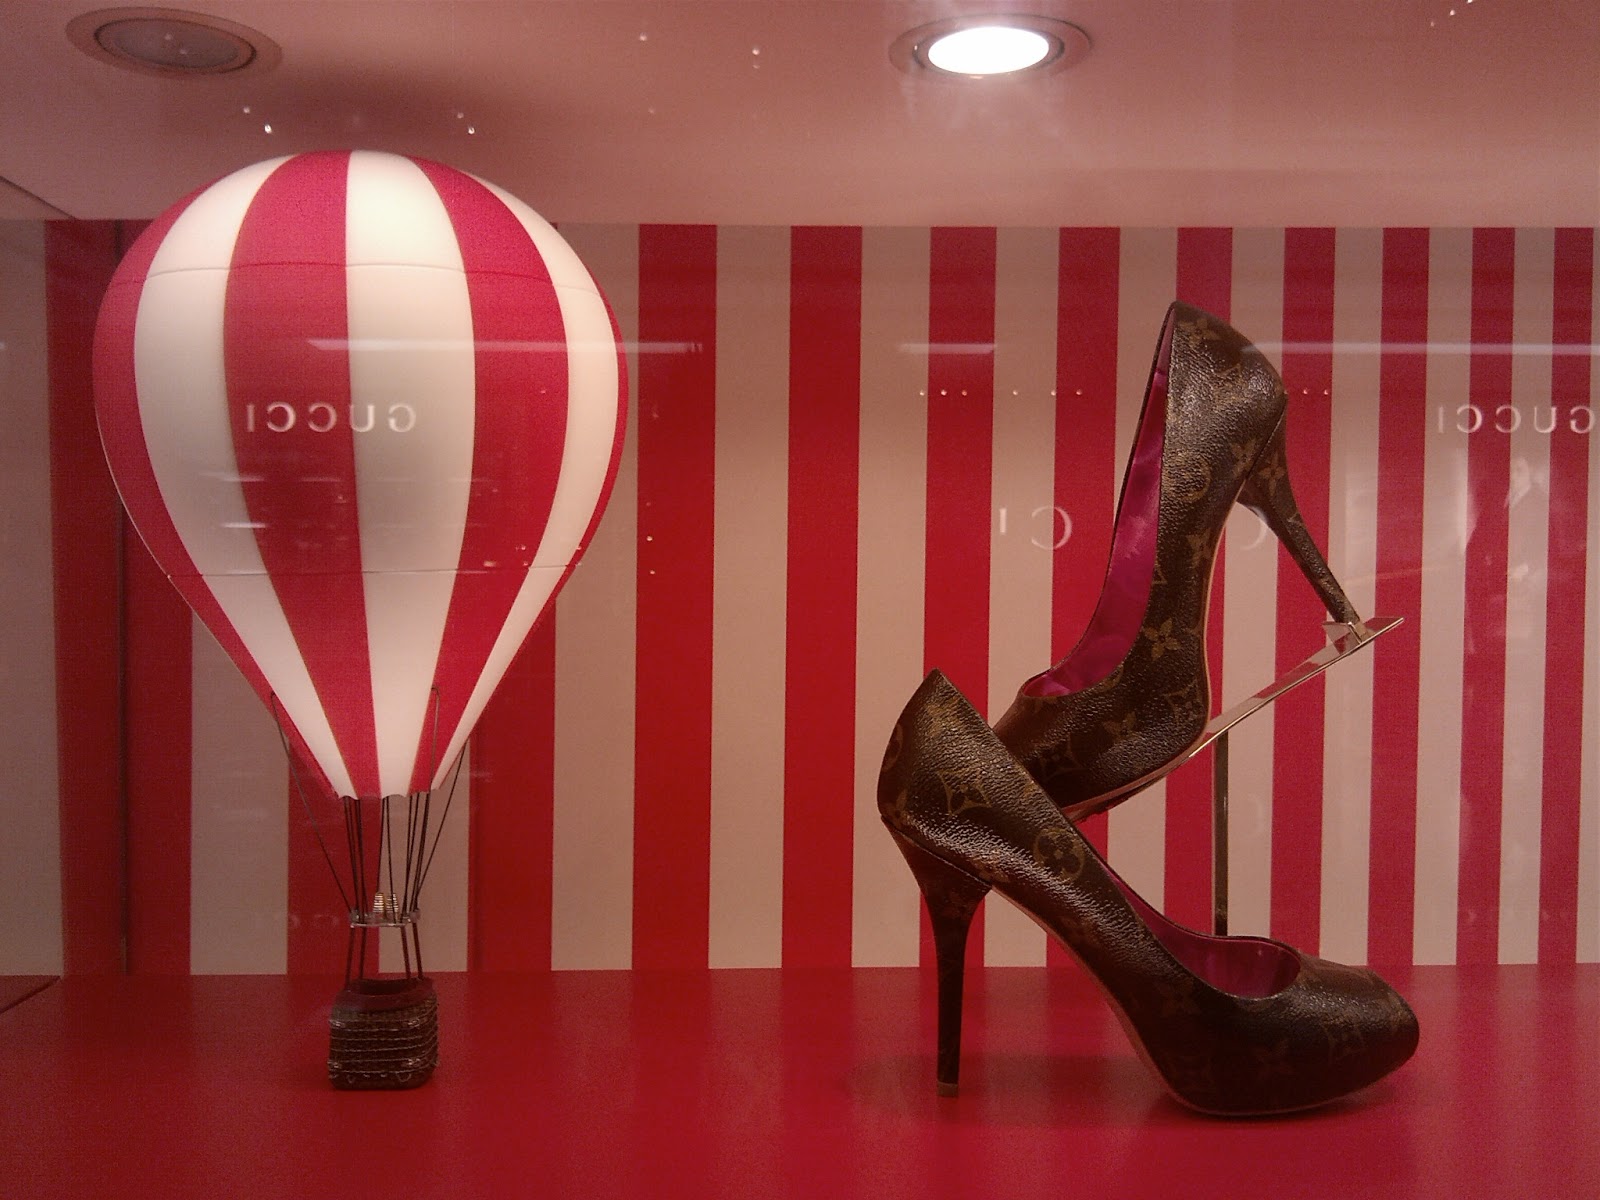 Louis Vuitton - Hot Air Balloons Window shop – Stock Editorial